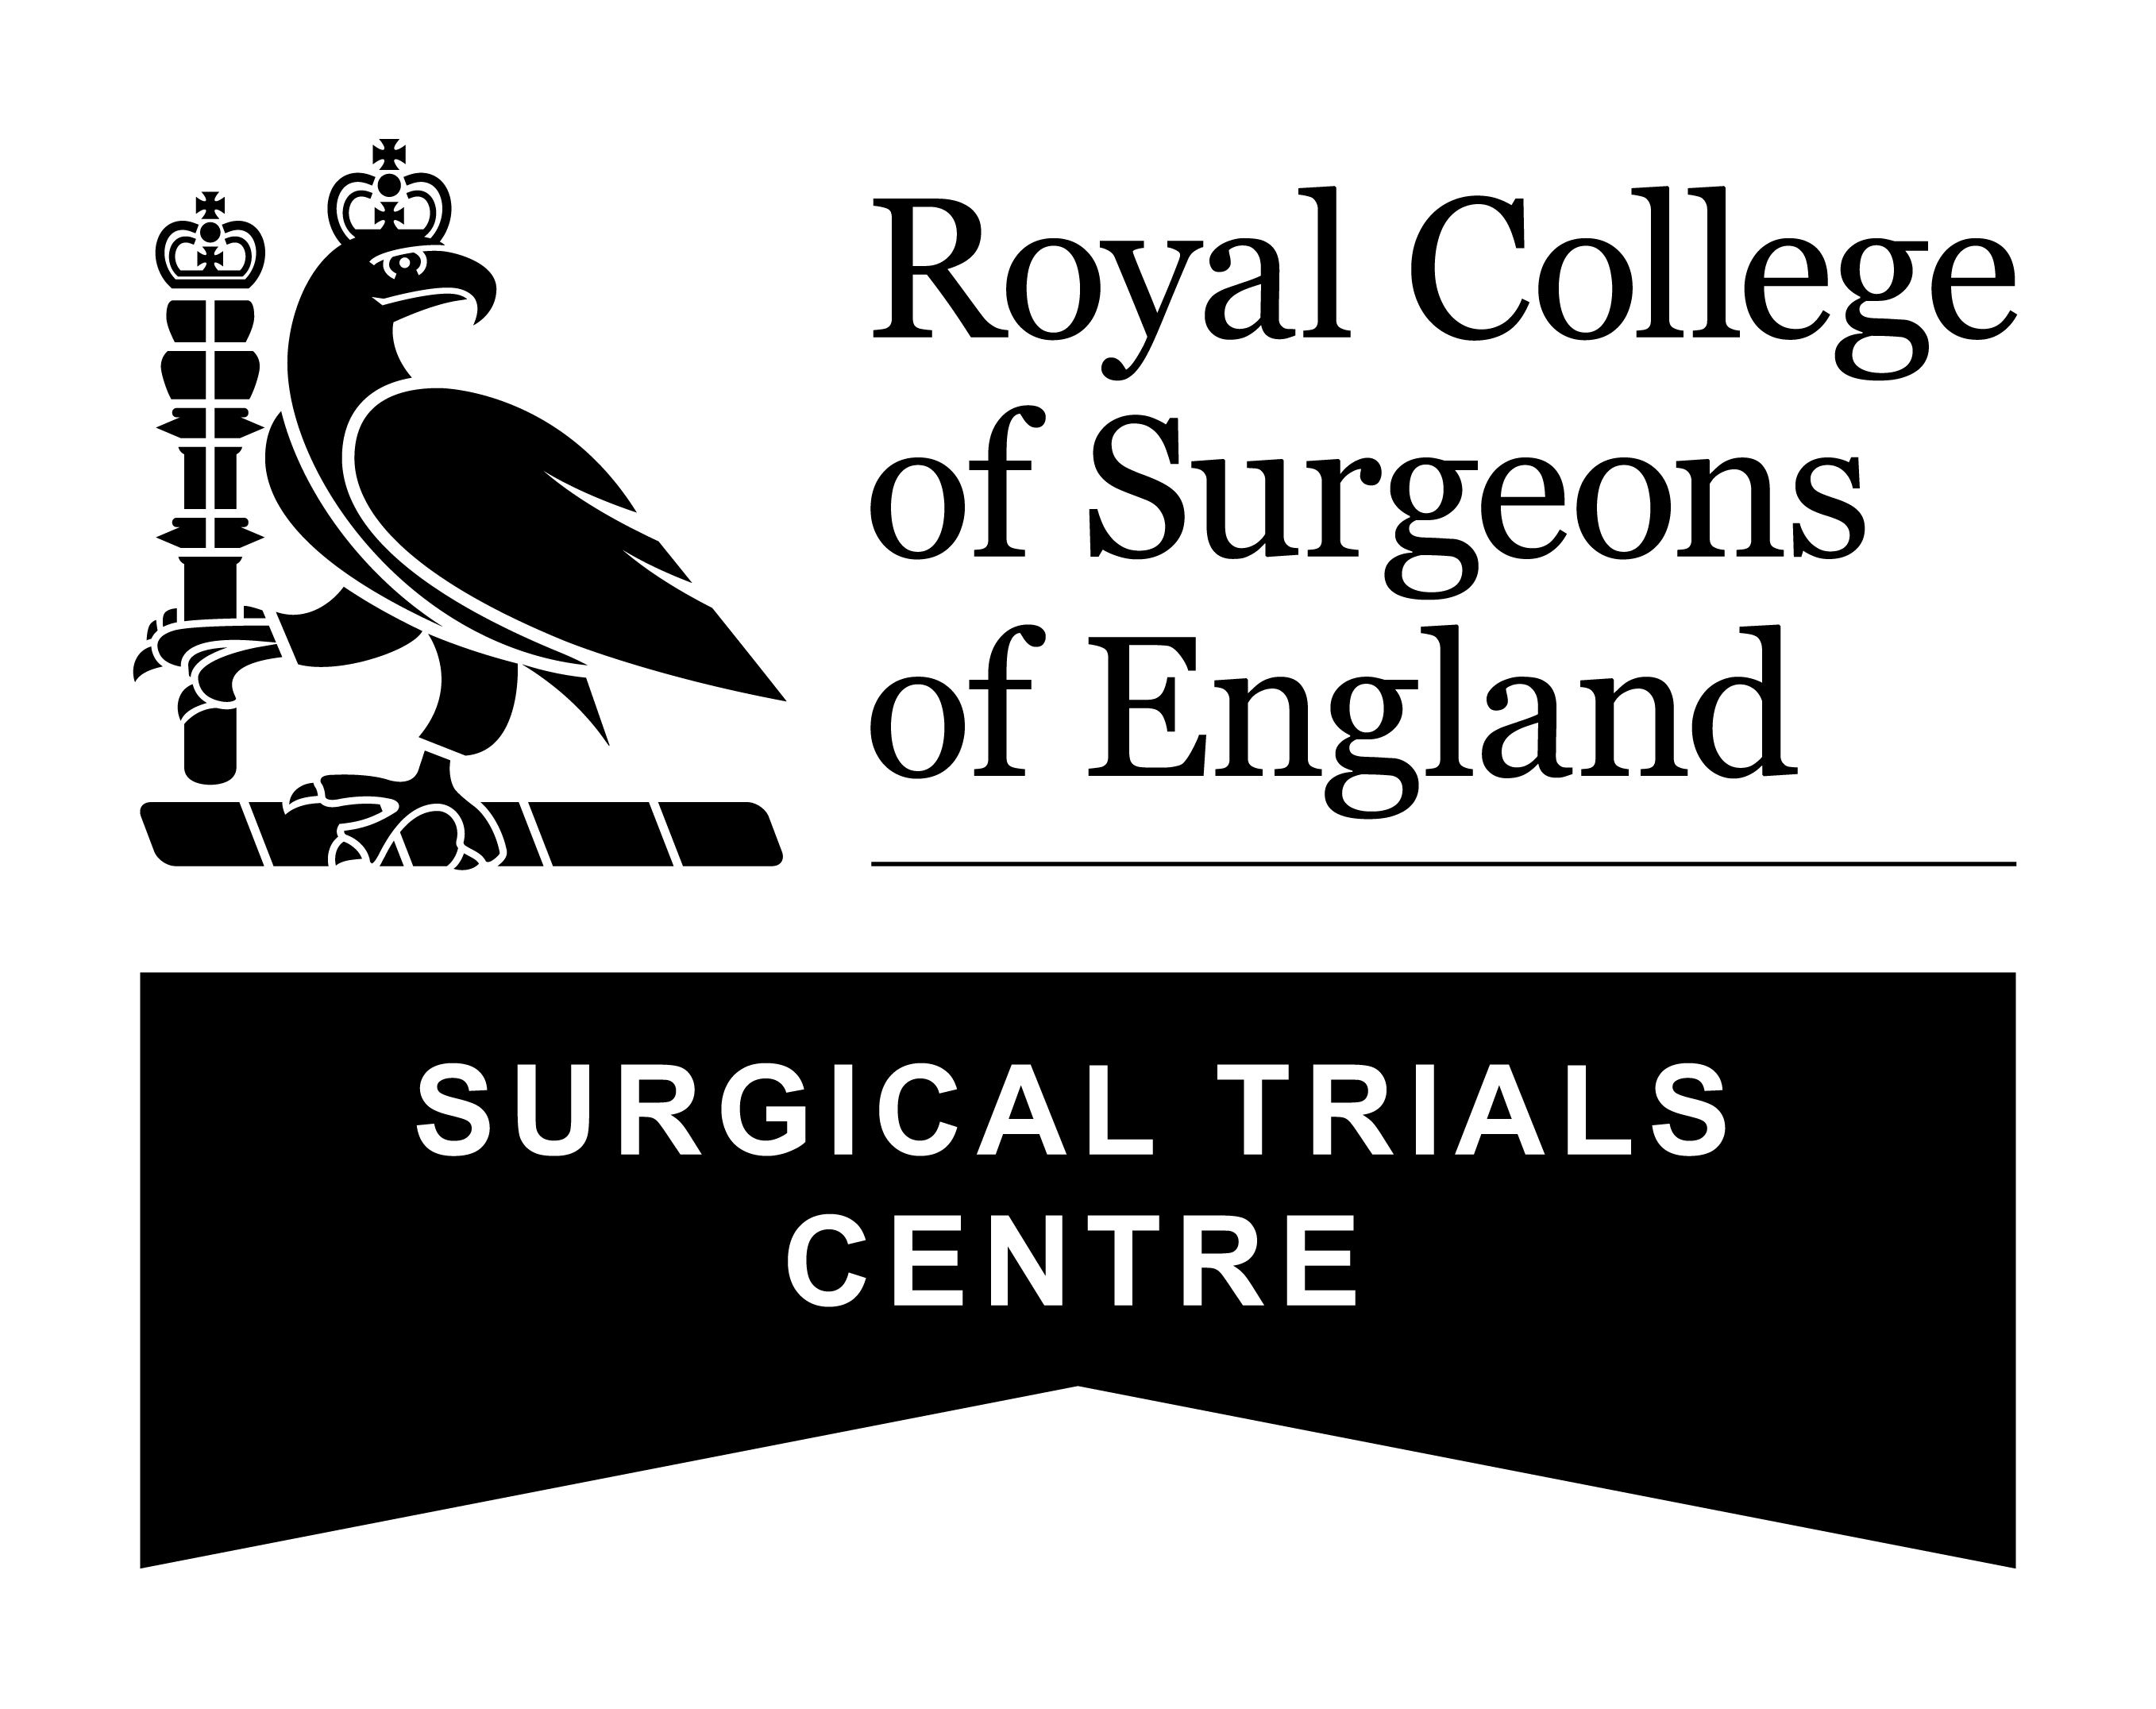 RCSEng Logo in black